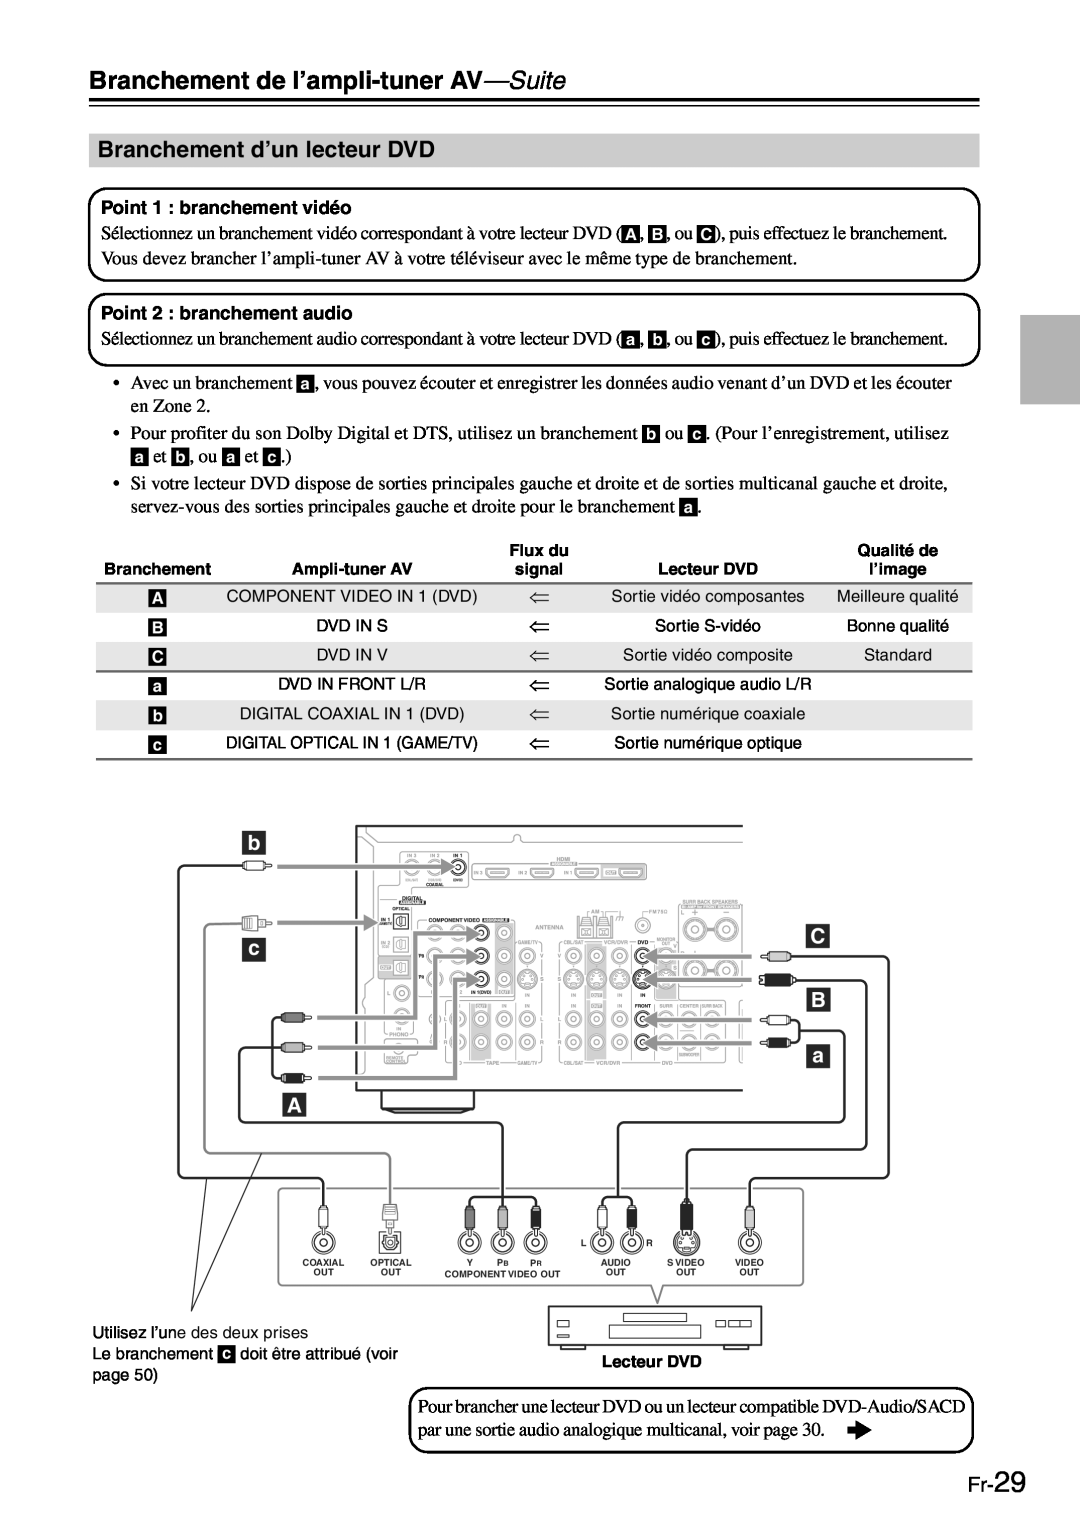 Onkyo TX-SR705 manual Branchement d’un lecteur DVD, Fr-29, Branchement de l’ampli-tuner AV—Suite 